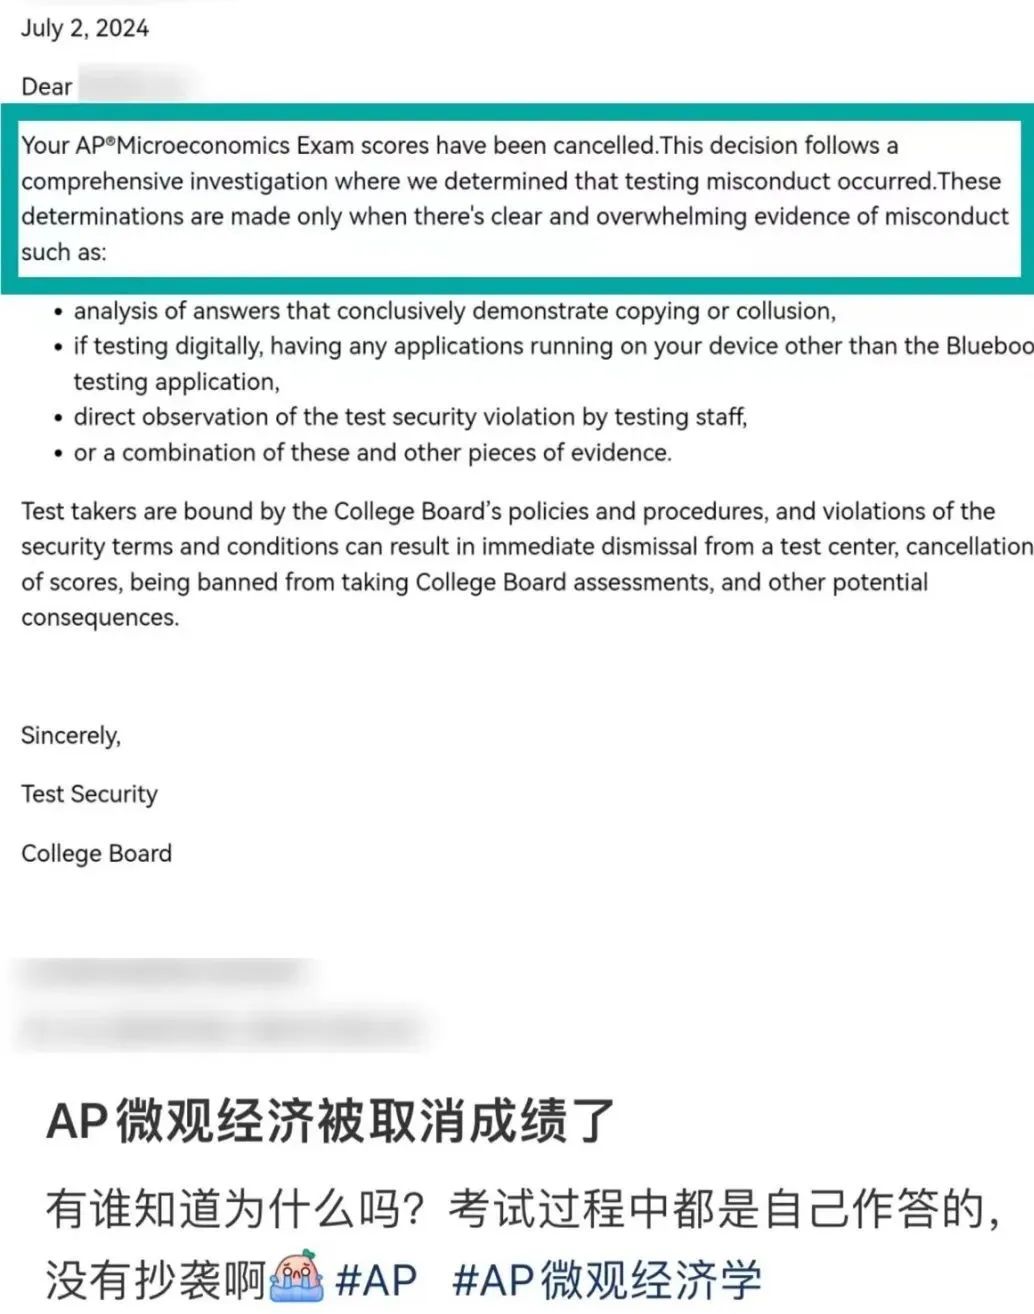 突发！上海、北京、美高大批学生AP成绩被取消！考生该如何应对？